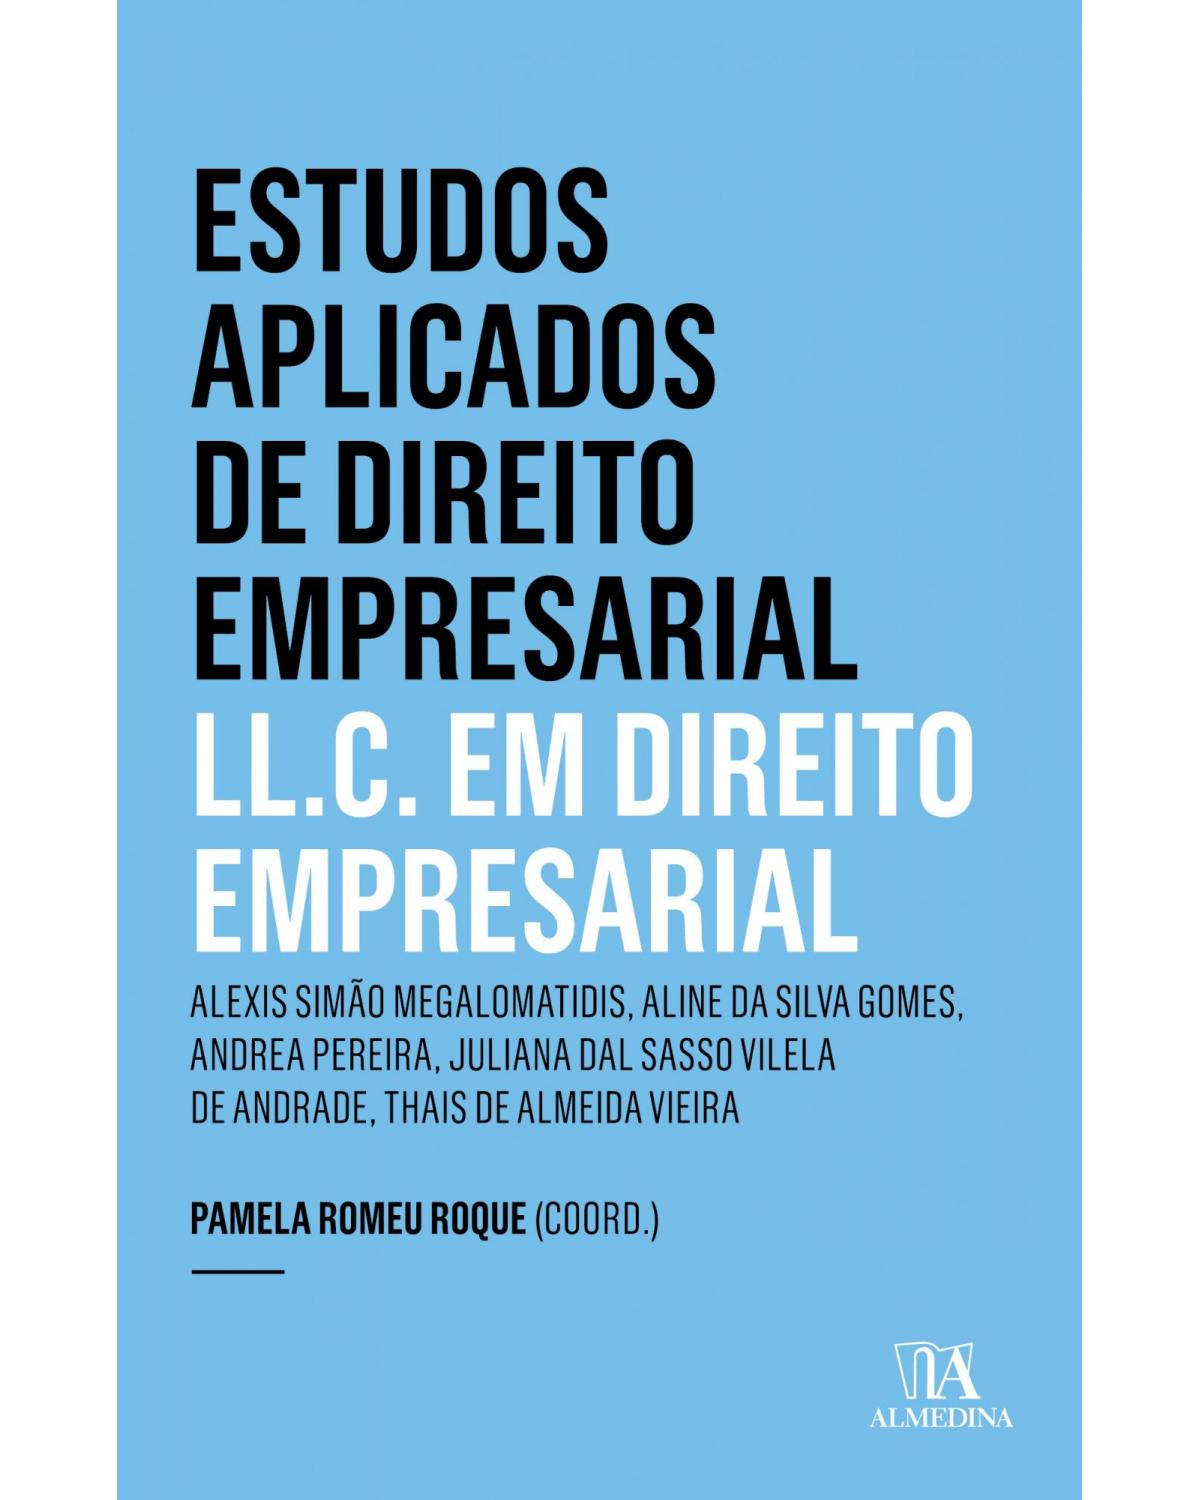 Estudos aplicados de direito empresarial - LL.C. em direito empresarial - 1ª Edição | 2017